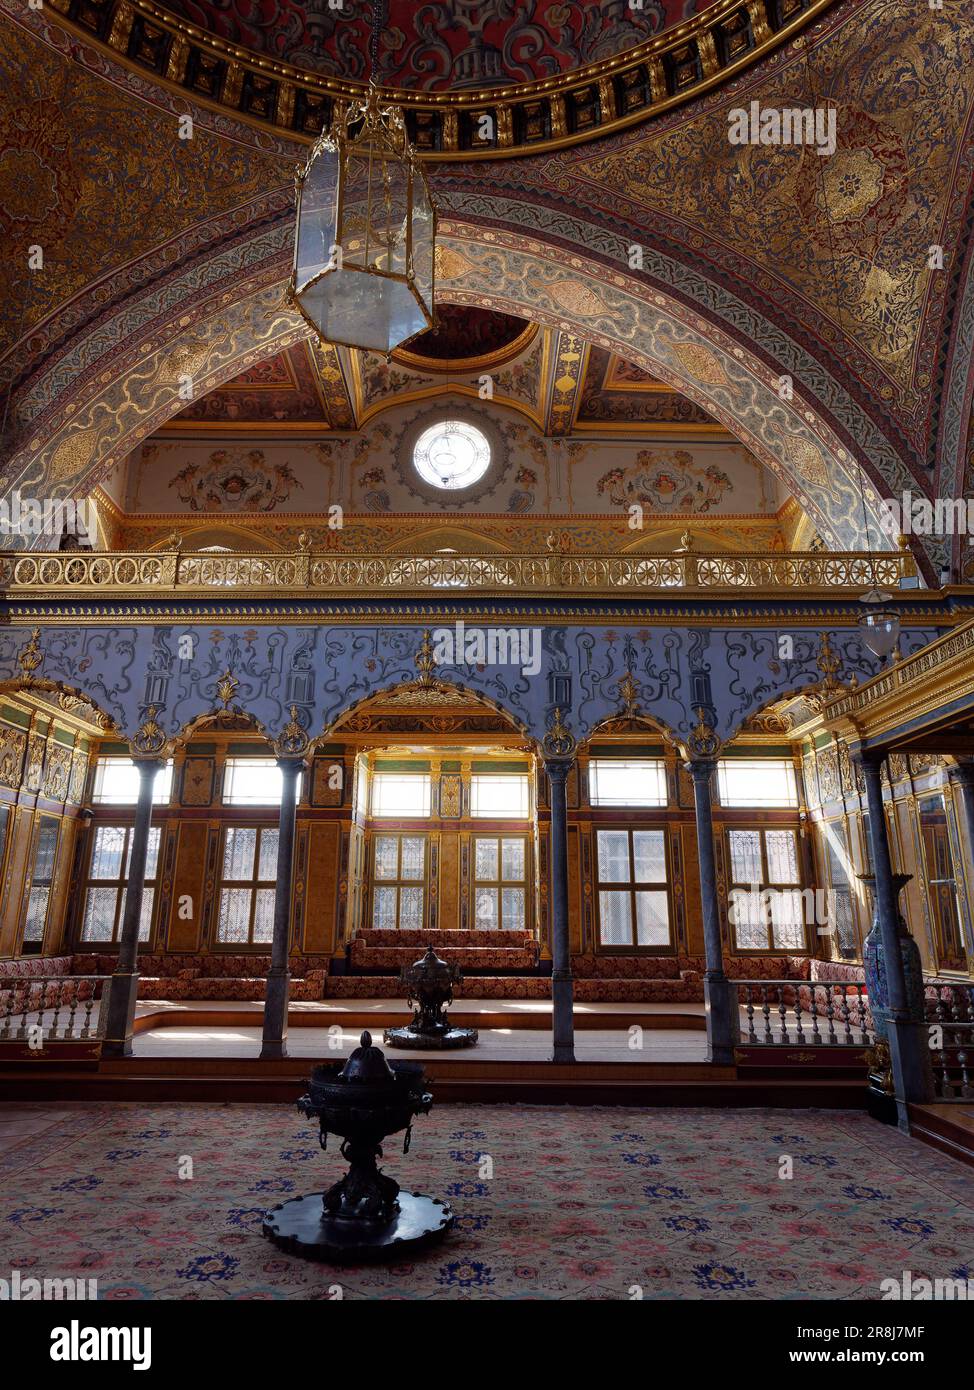 Sala Imperiale, sala del Trono, Harem, Palazzo Topkapi, quartiere di Fatih, Istanbul, Turchia. Camera dorata elaborata con area salotto e destra trono. Foto Stock